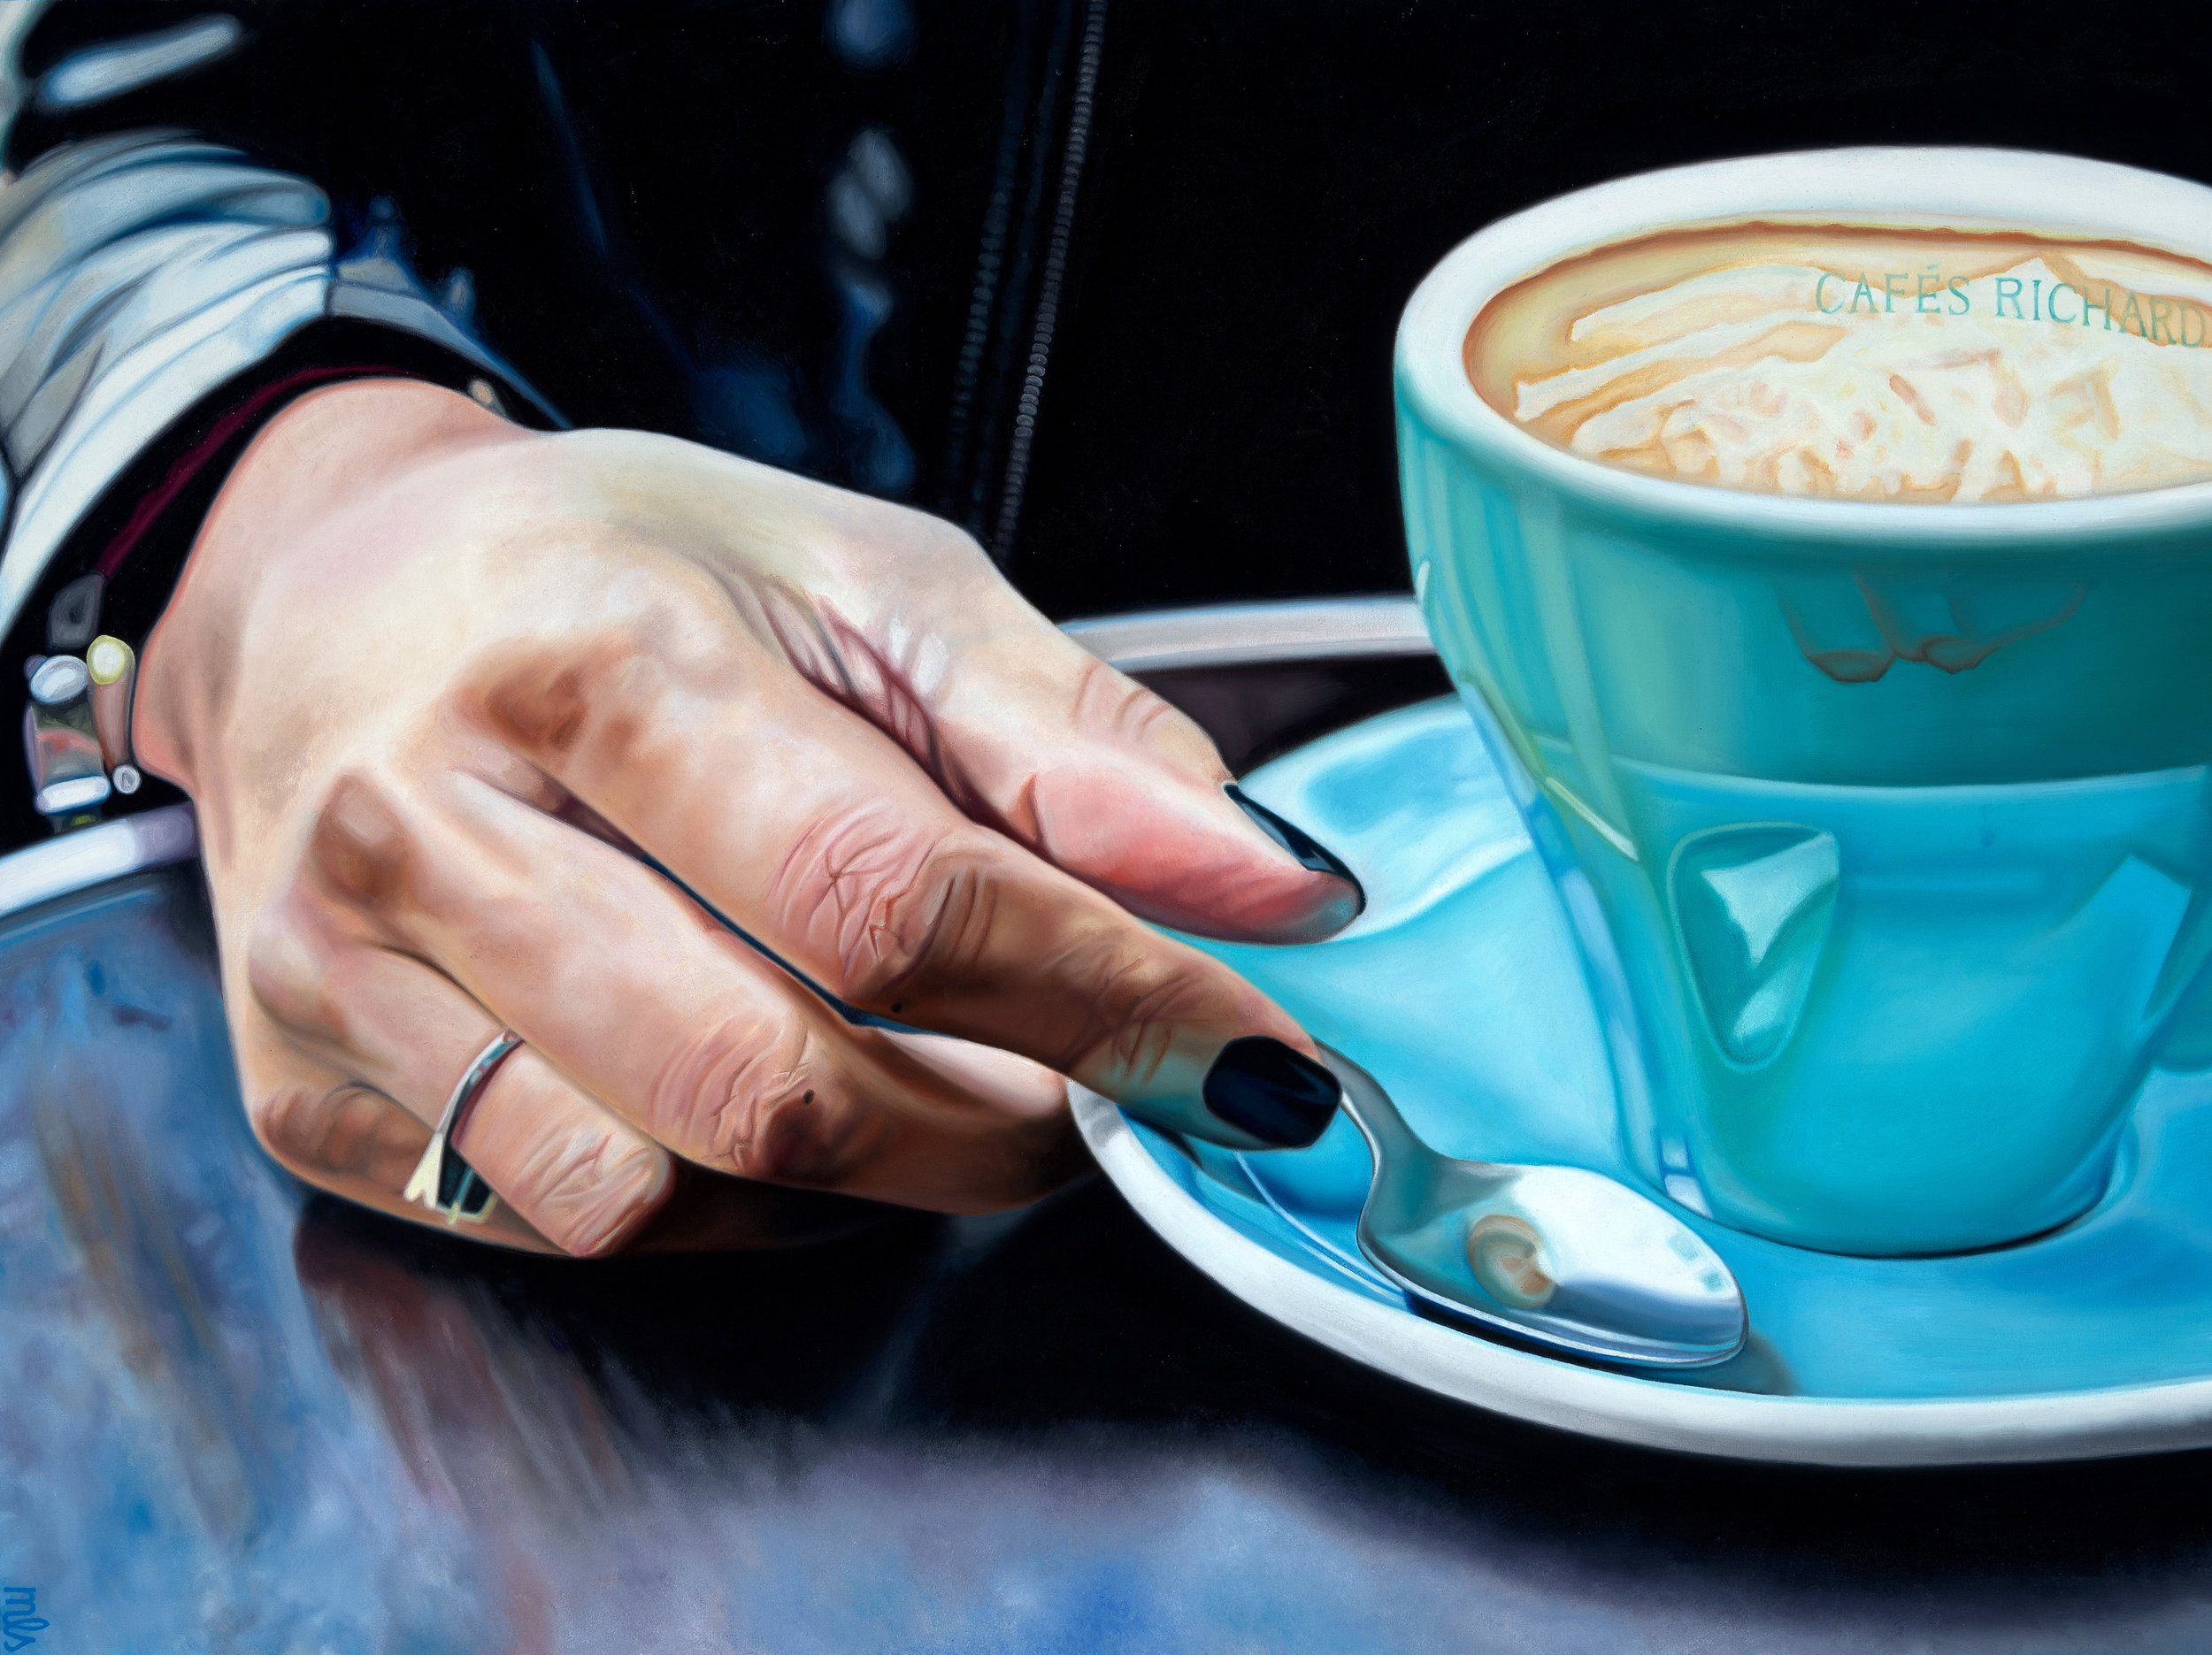  Café Richard, oil on canvas, 36″ x 48,” 2018 (SOLD). 